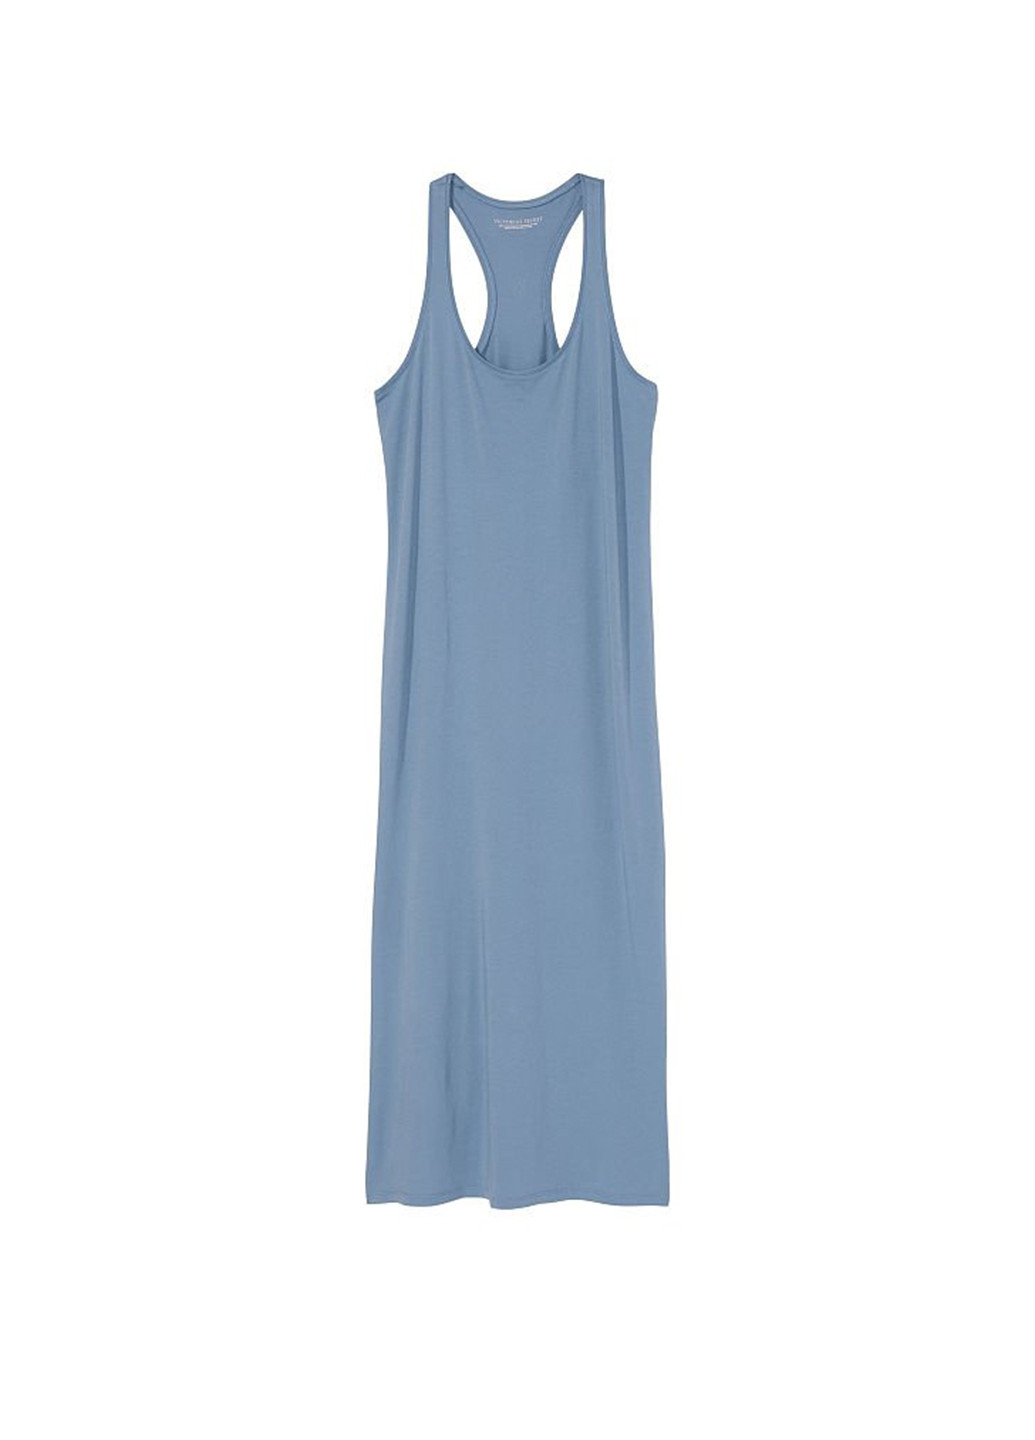 Серо-голубое домашнее платье платье-майка Victoria's Secret однотонное